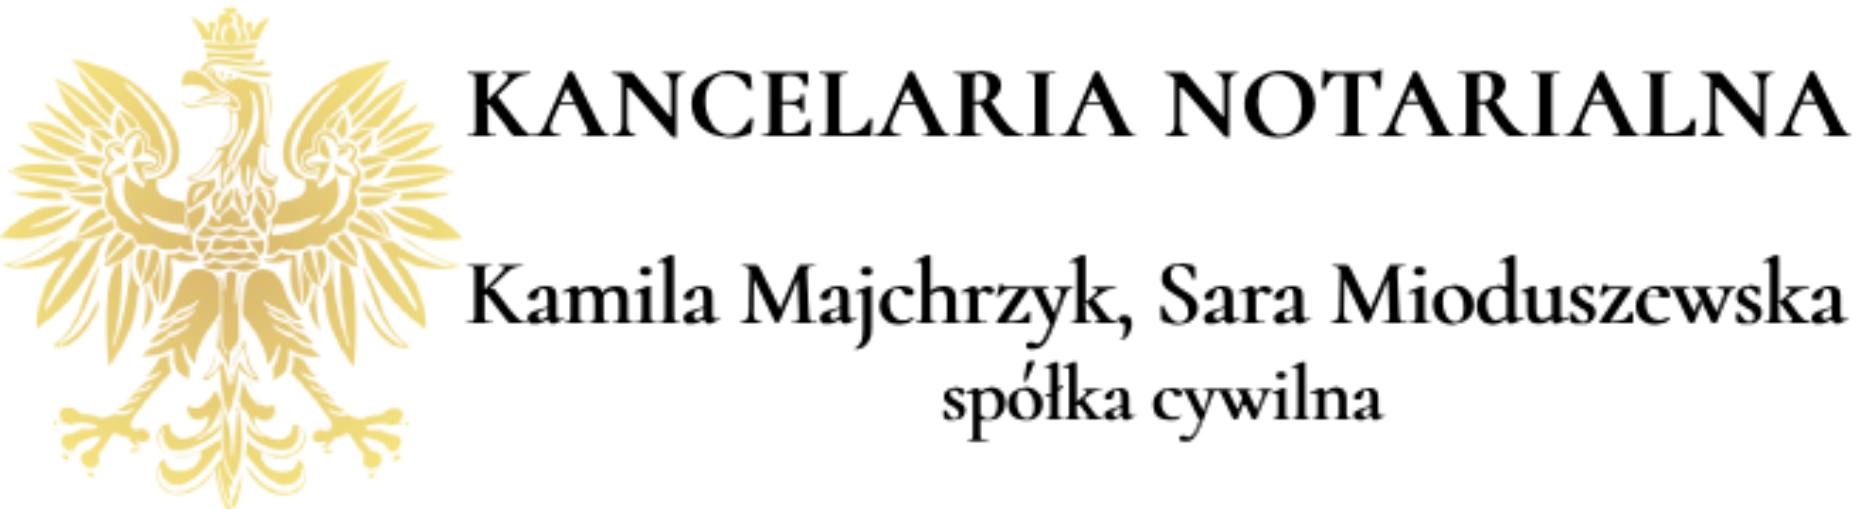 notariusz gorzow logo